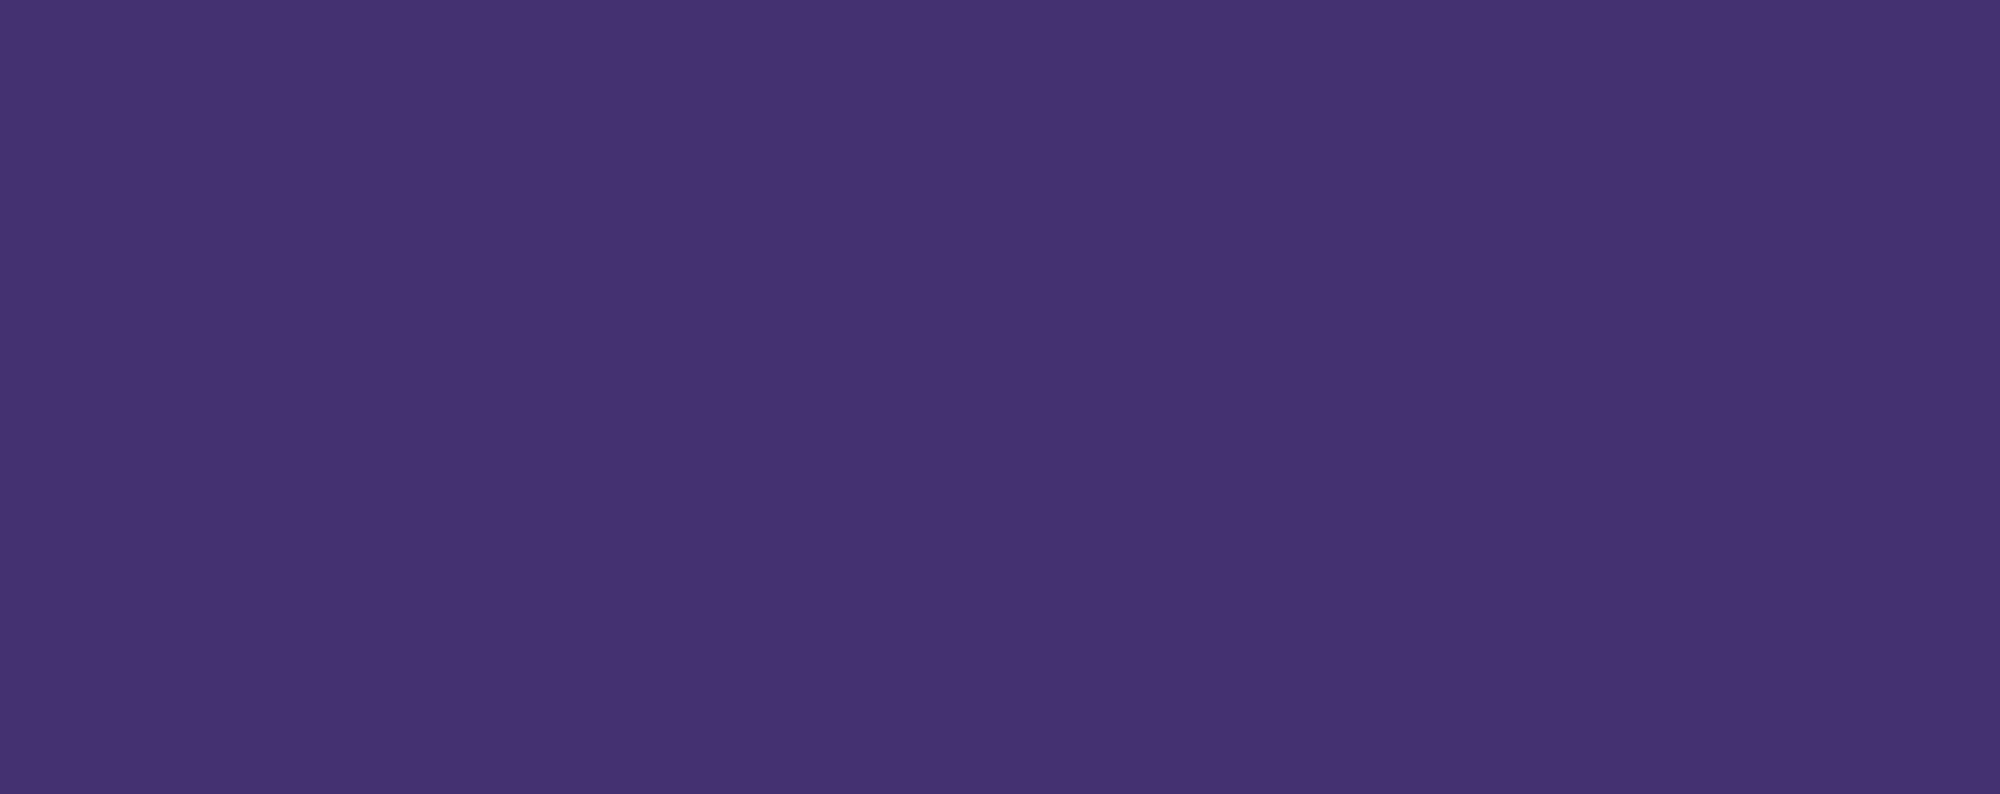 深紫-1